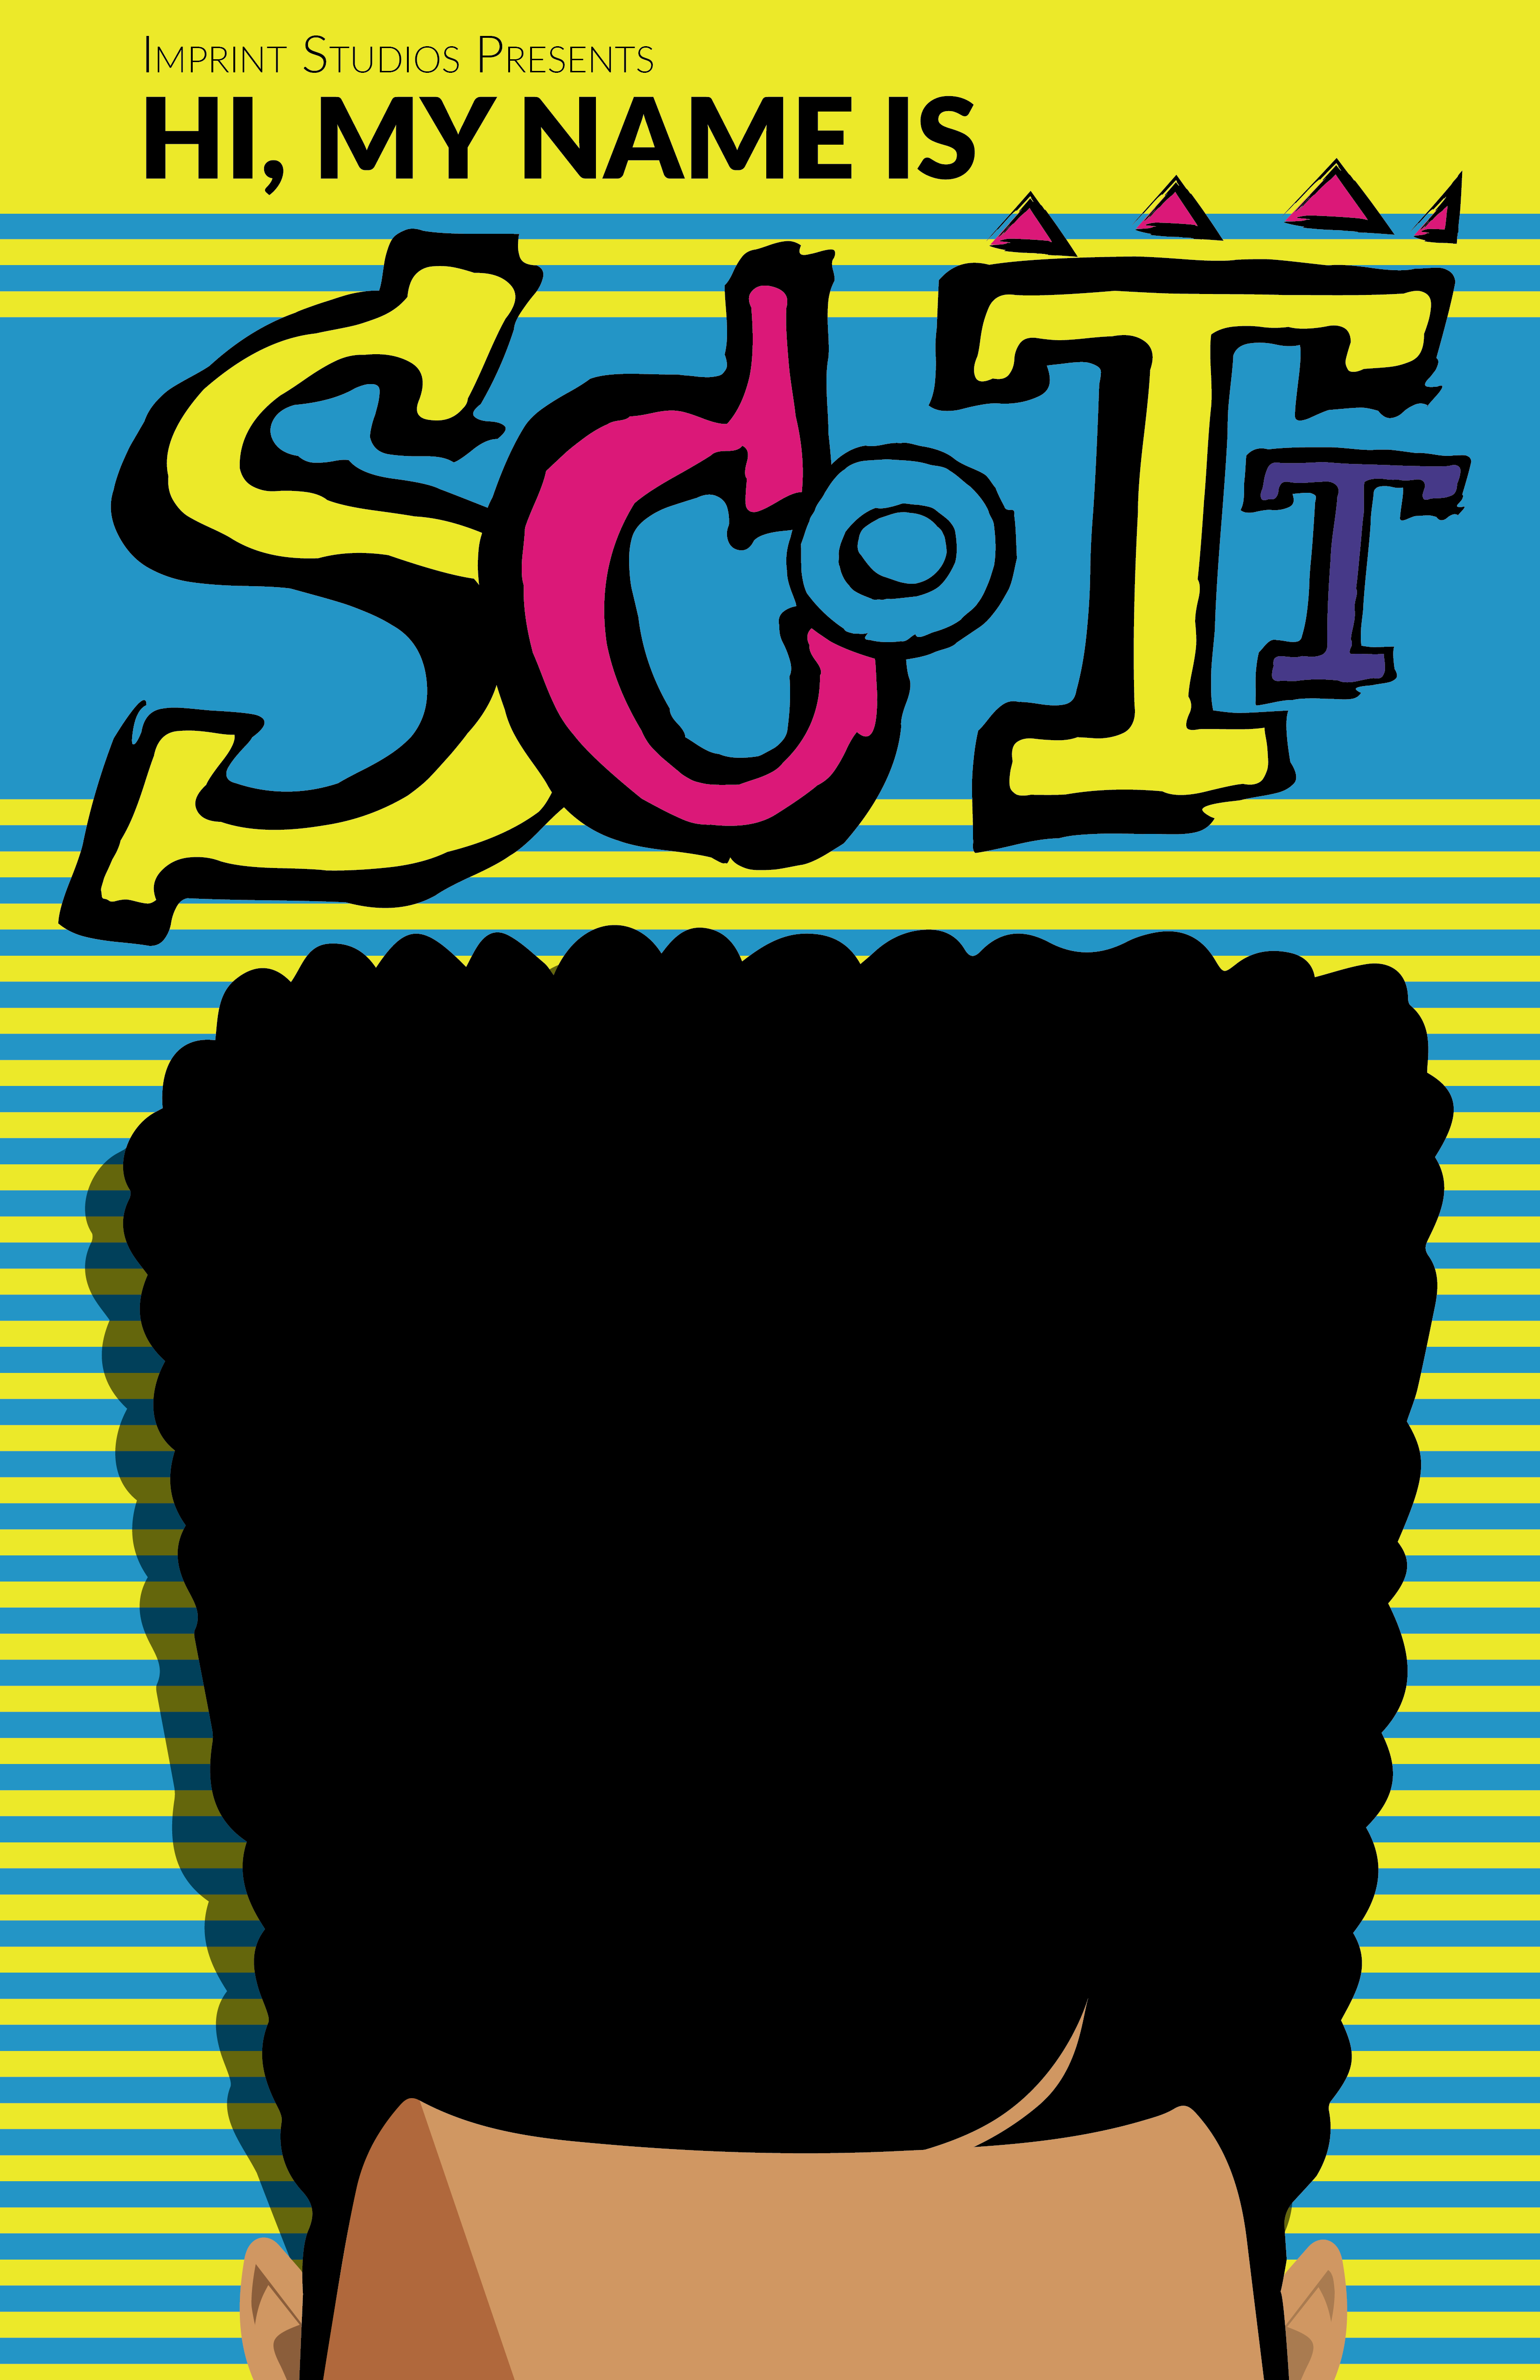 Hi, My Name Is Scott